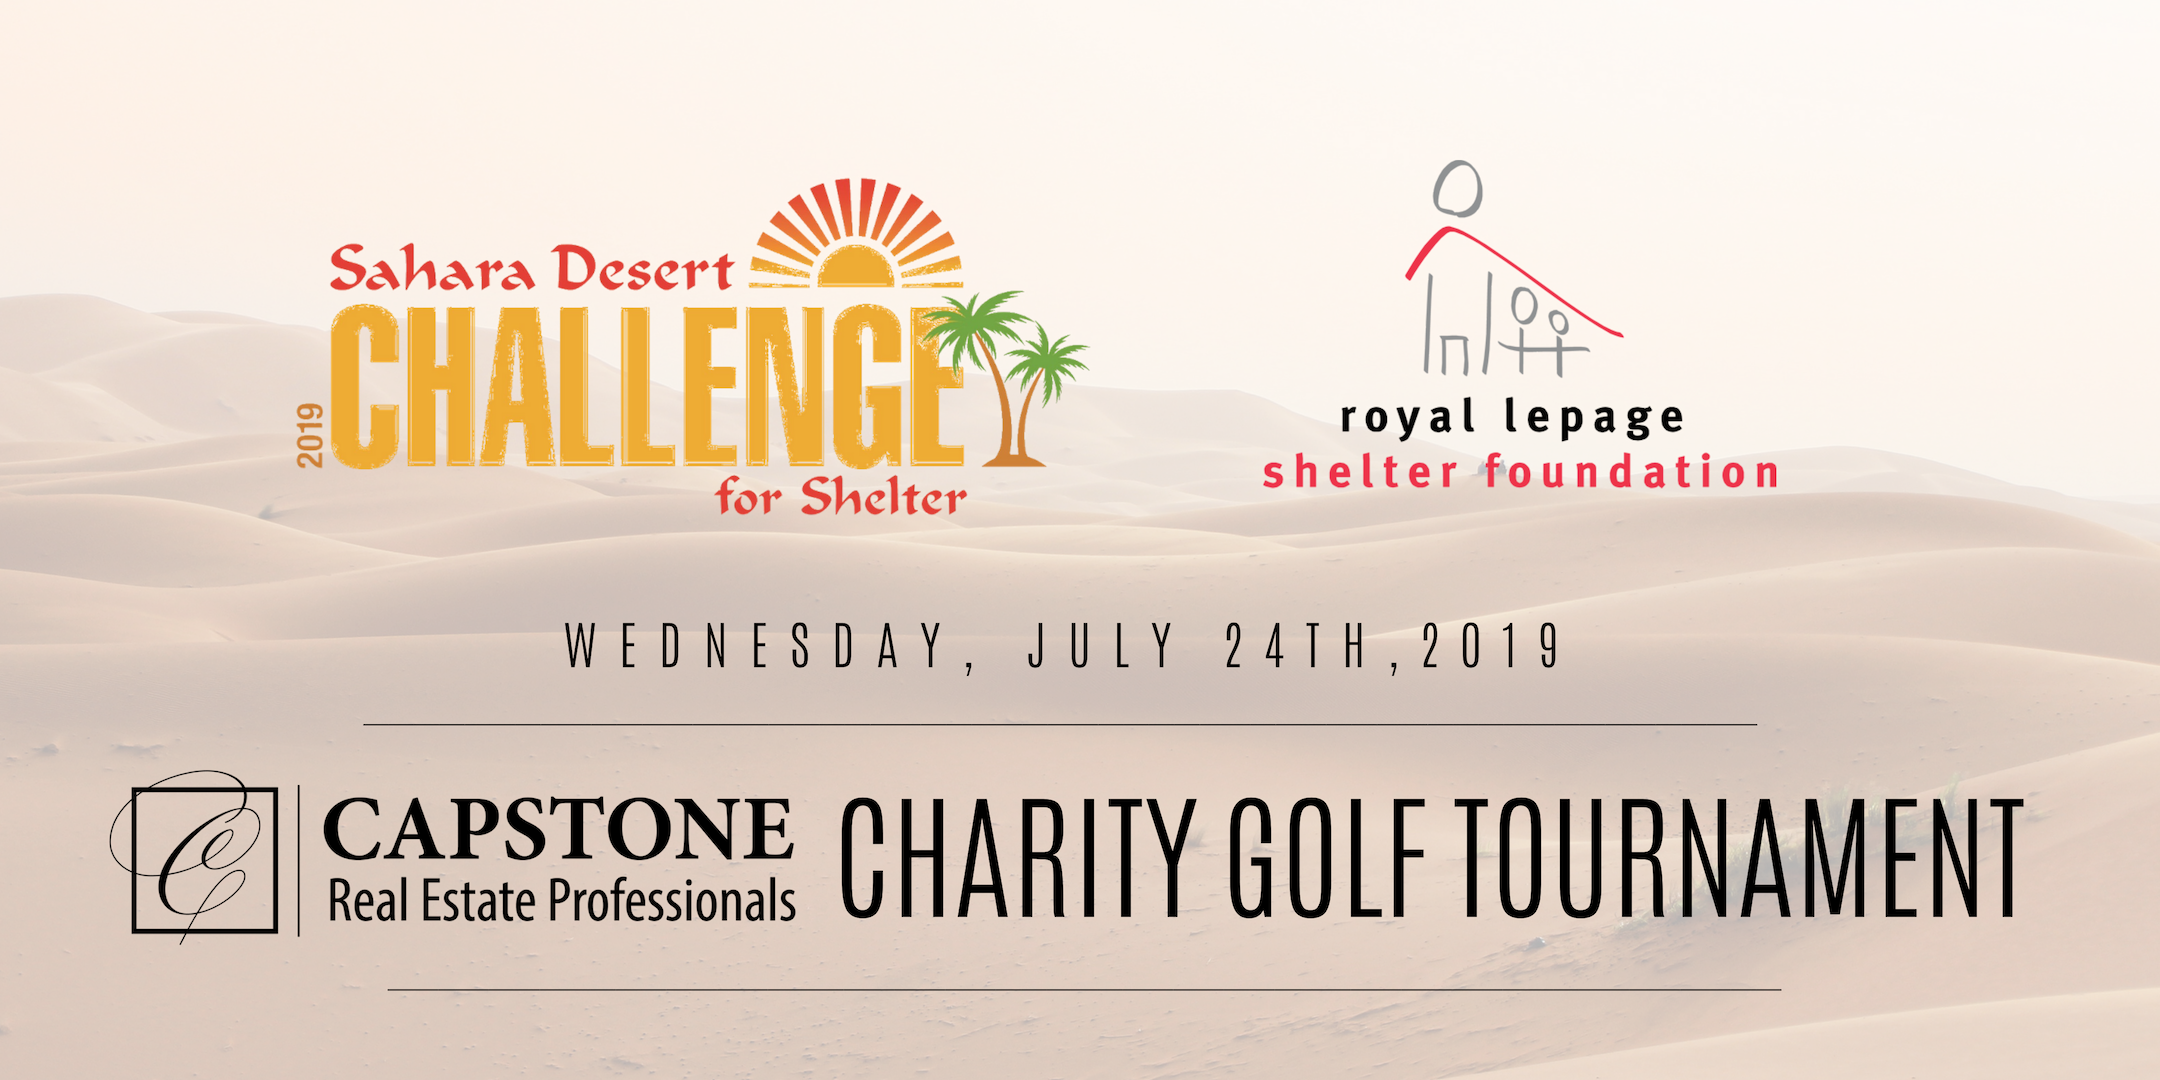 Sahara Desert Golf Tournament for Shelter!